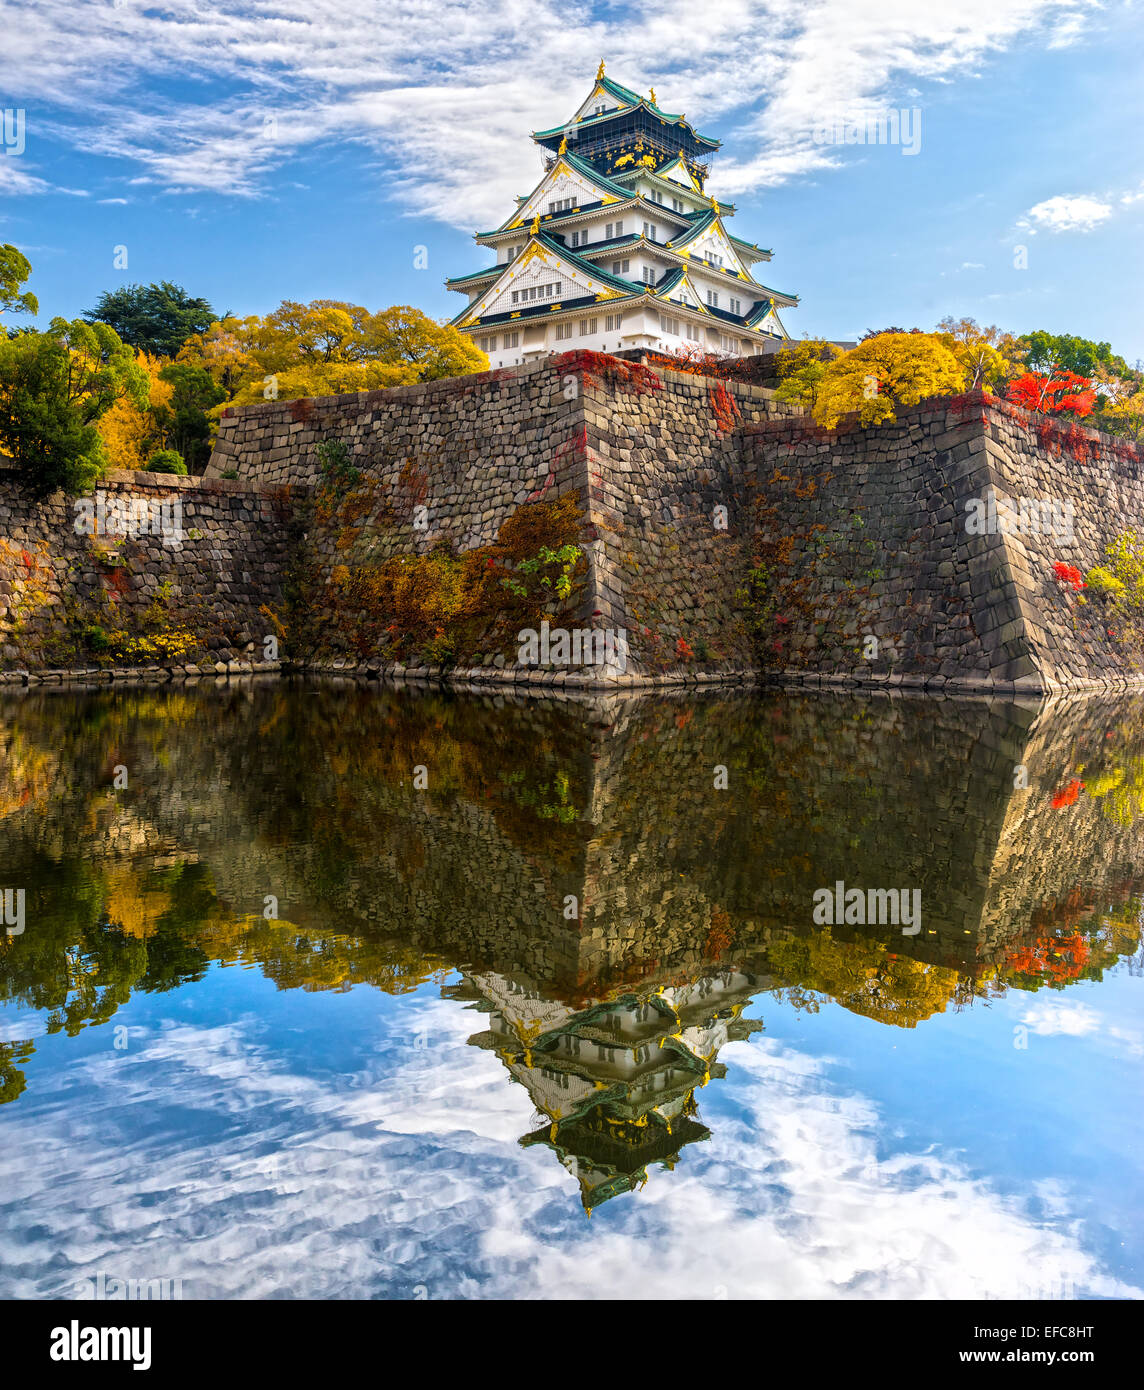 Osaka Castle in Osaka with autumn leaves. Japan. Stock Photo